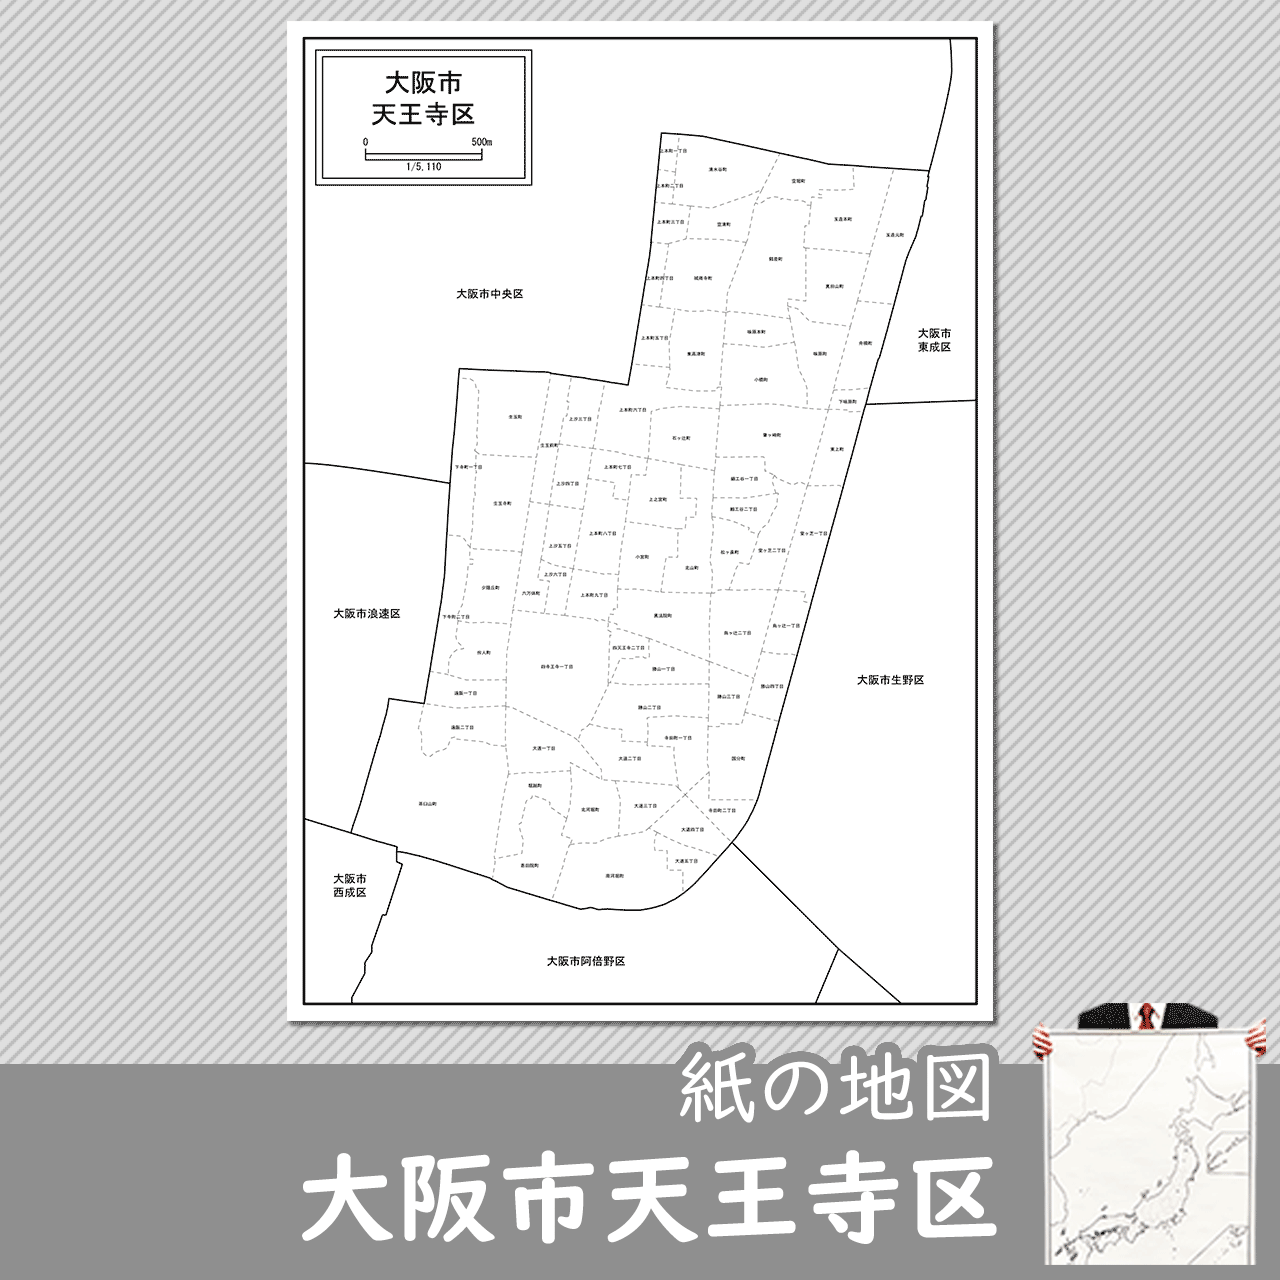 大阪市天王寺区の紙の白地図のサムネイル